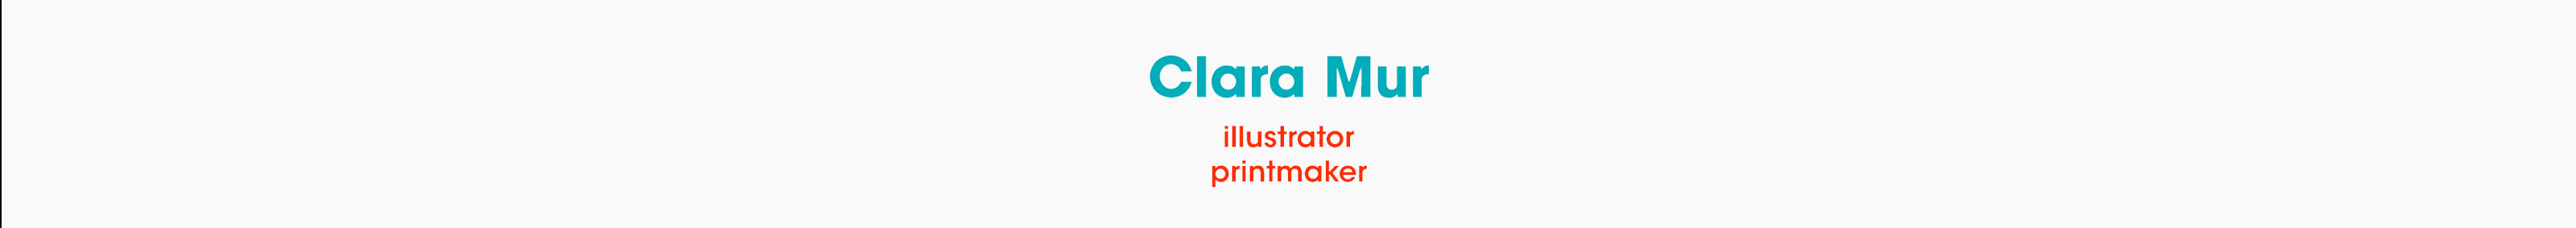 Clara Mur's profile banner